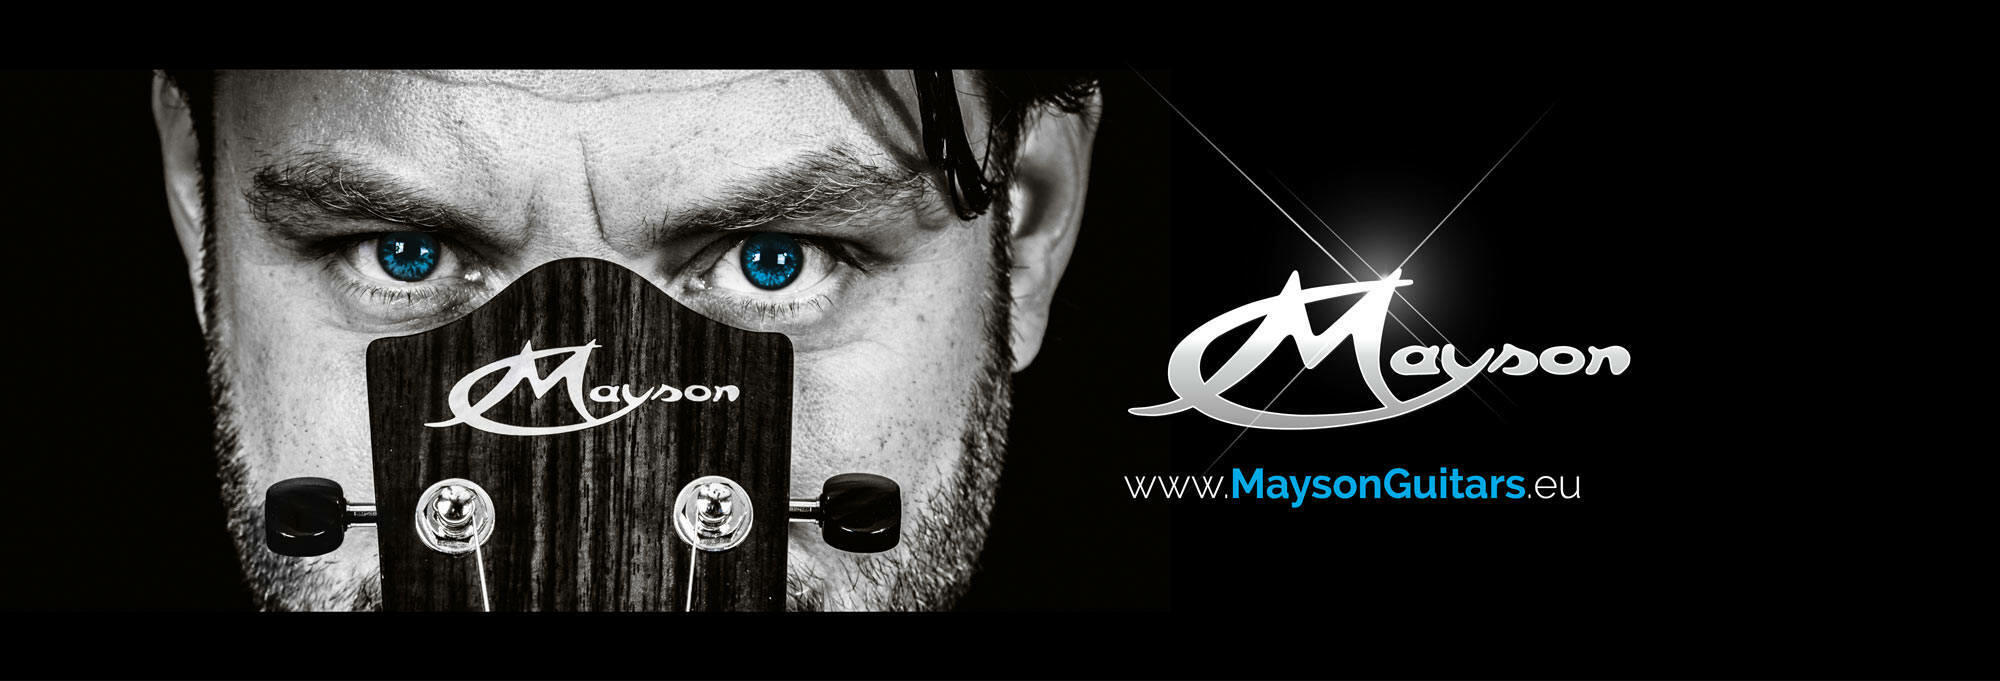 Mayson banner www.maysonguitars.eu